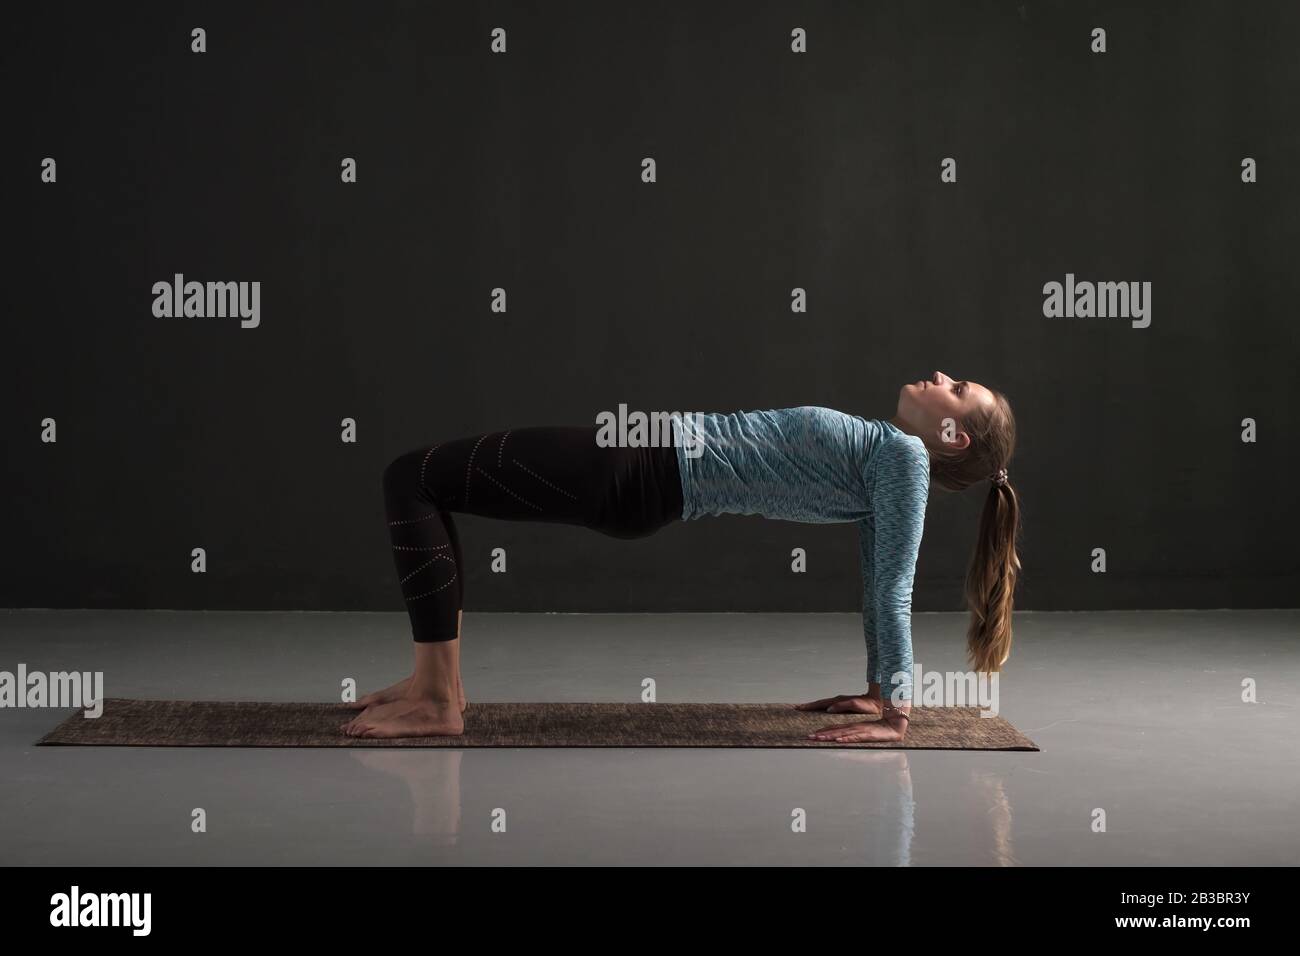 Woman practices yoga asana purvottanasana or upward facing plank full pose isolated on black background Stock Photo